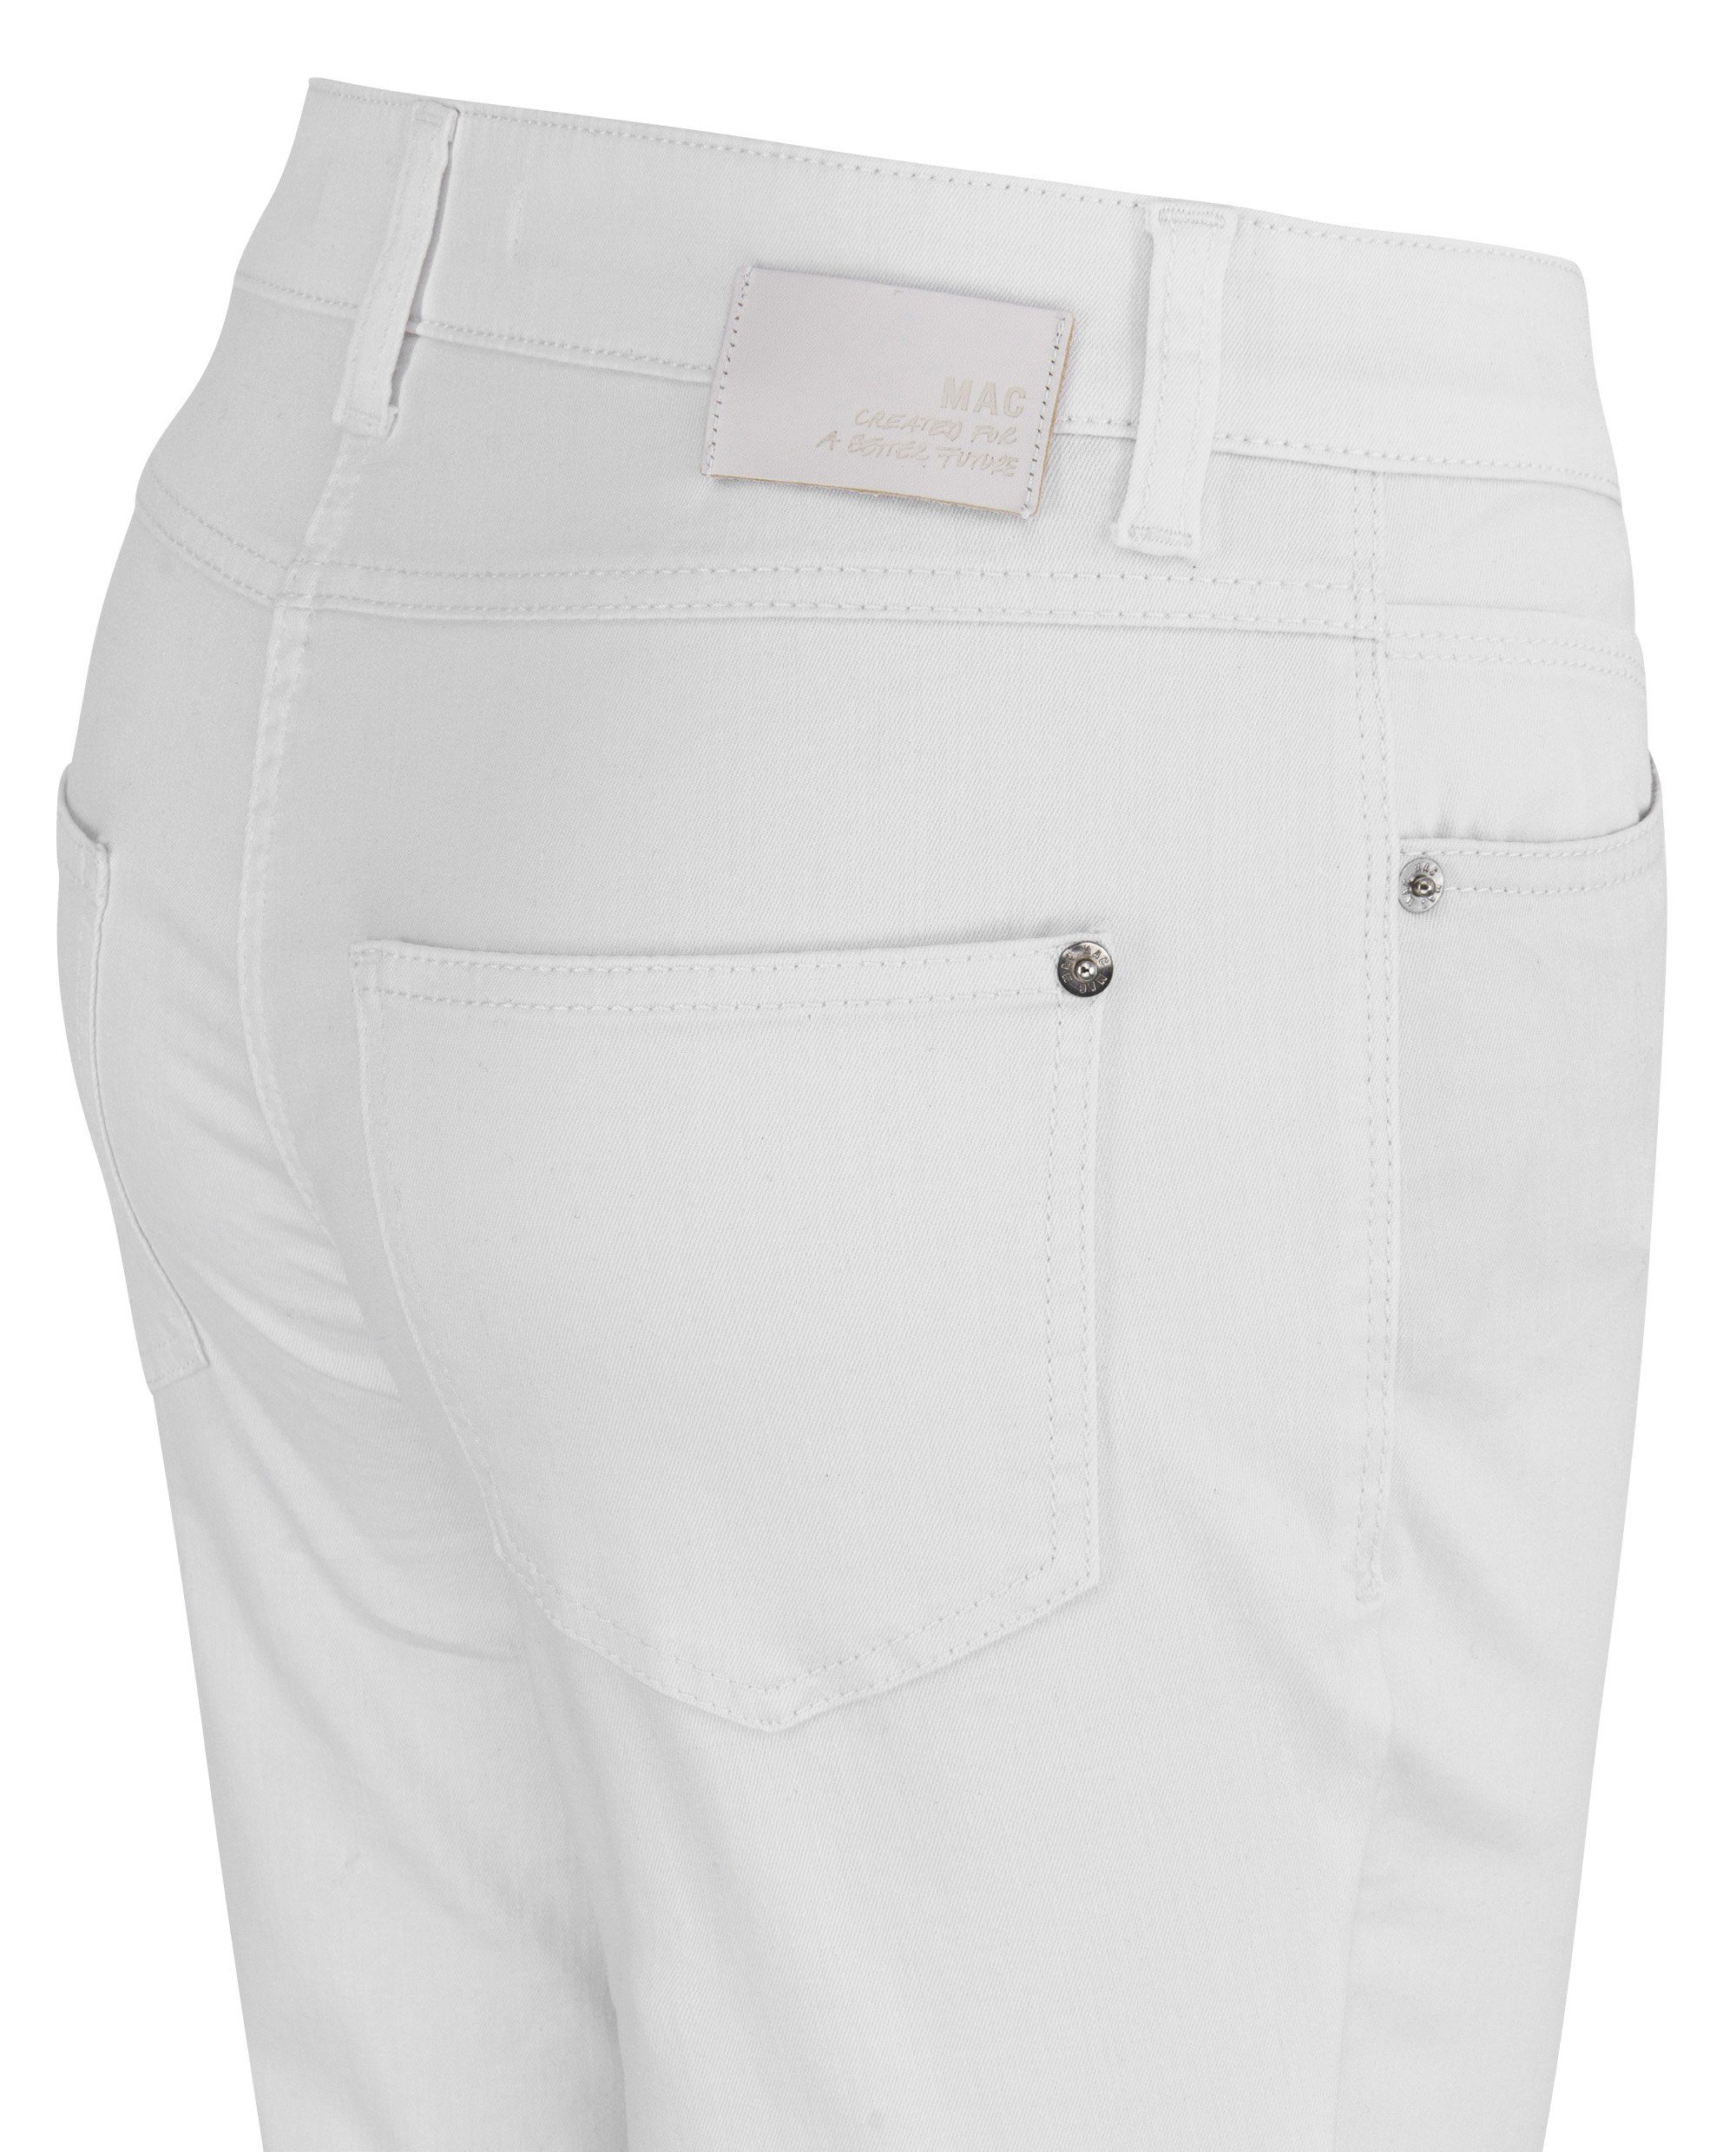 MAC Stretch-Jeans D010 7/8 white denim 5045-90-0391L MAC all MELANIE SUMMER